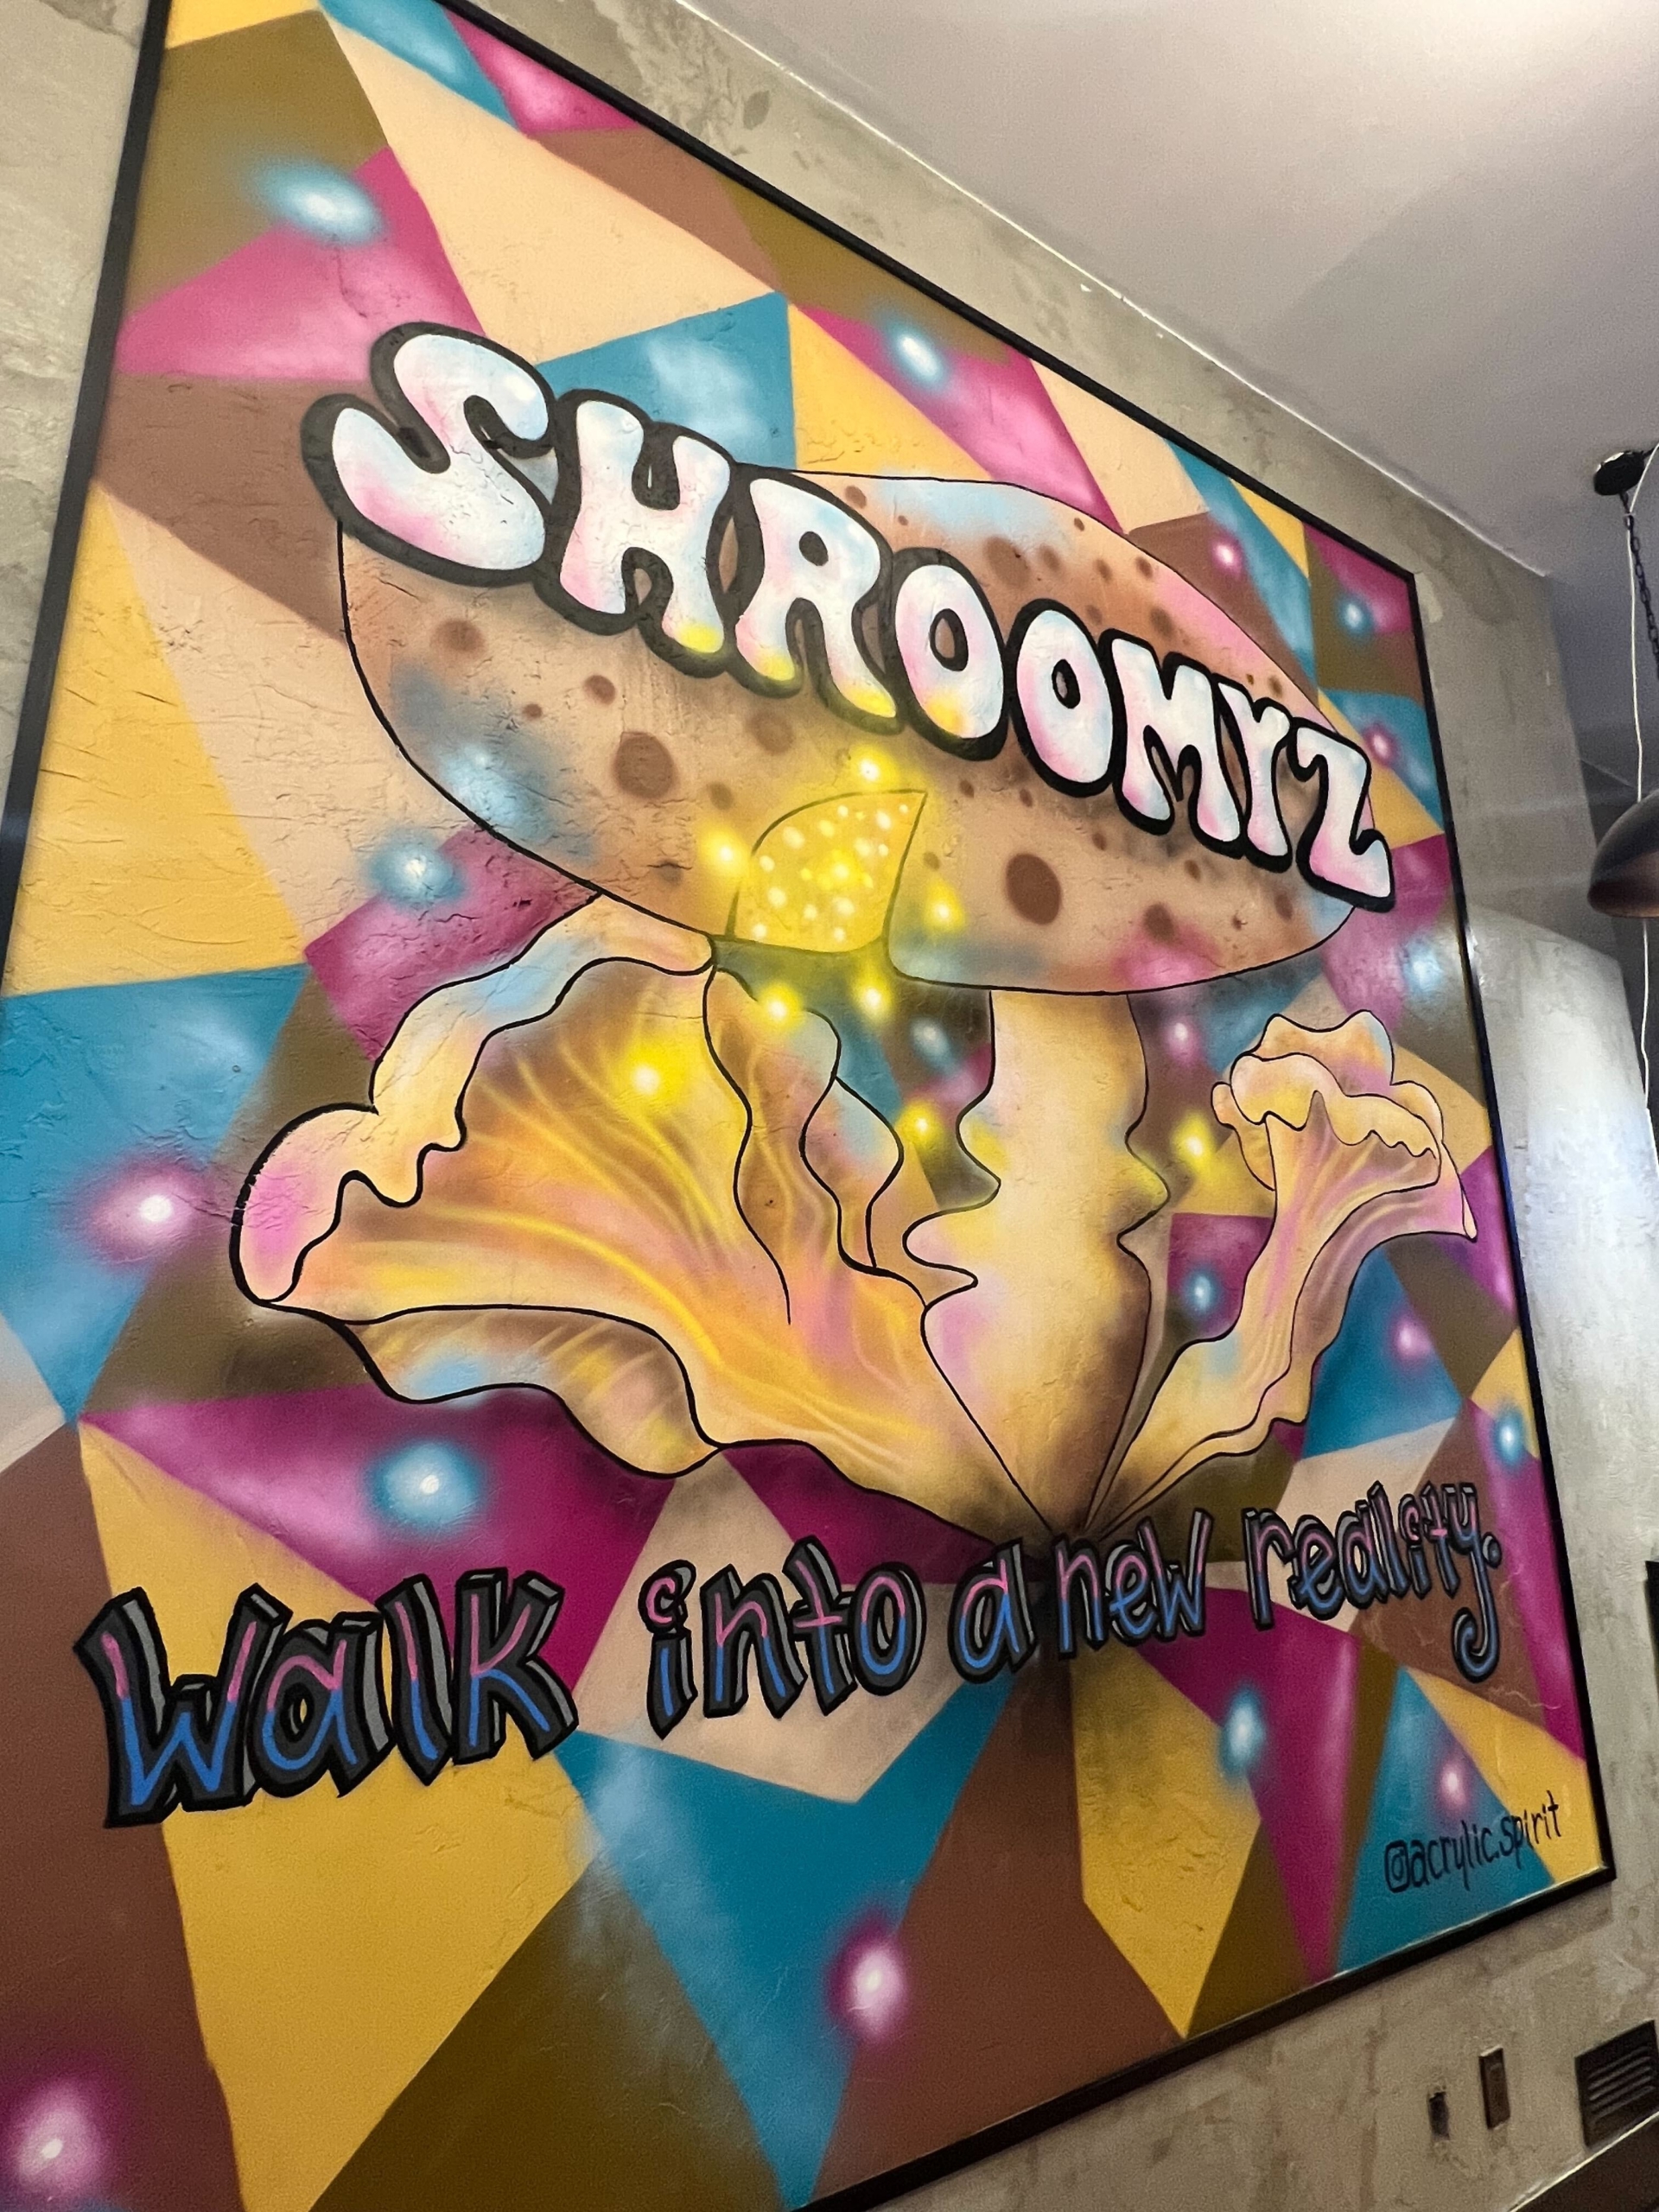 Shroomyz wall art